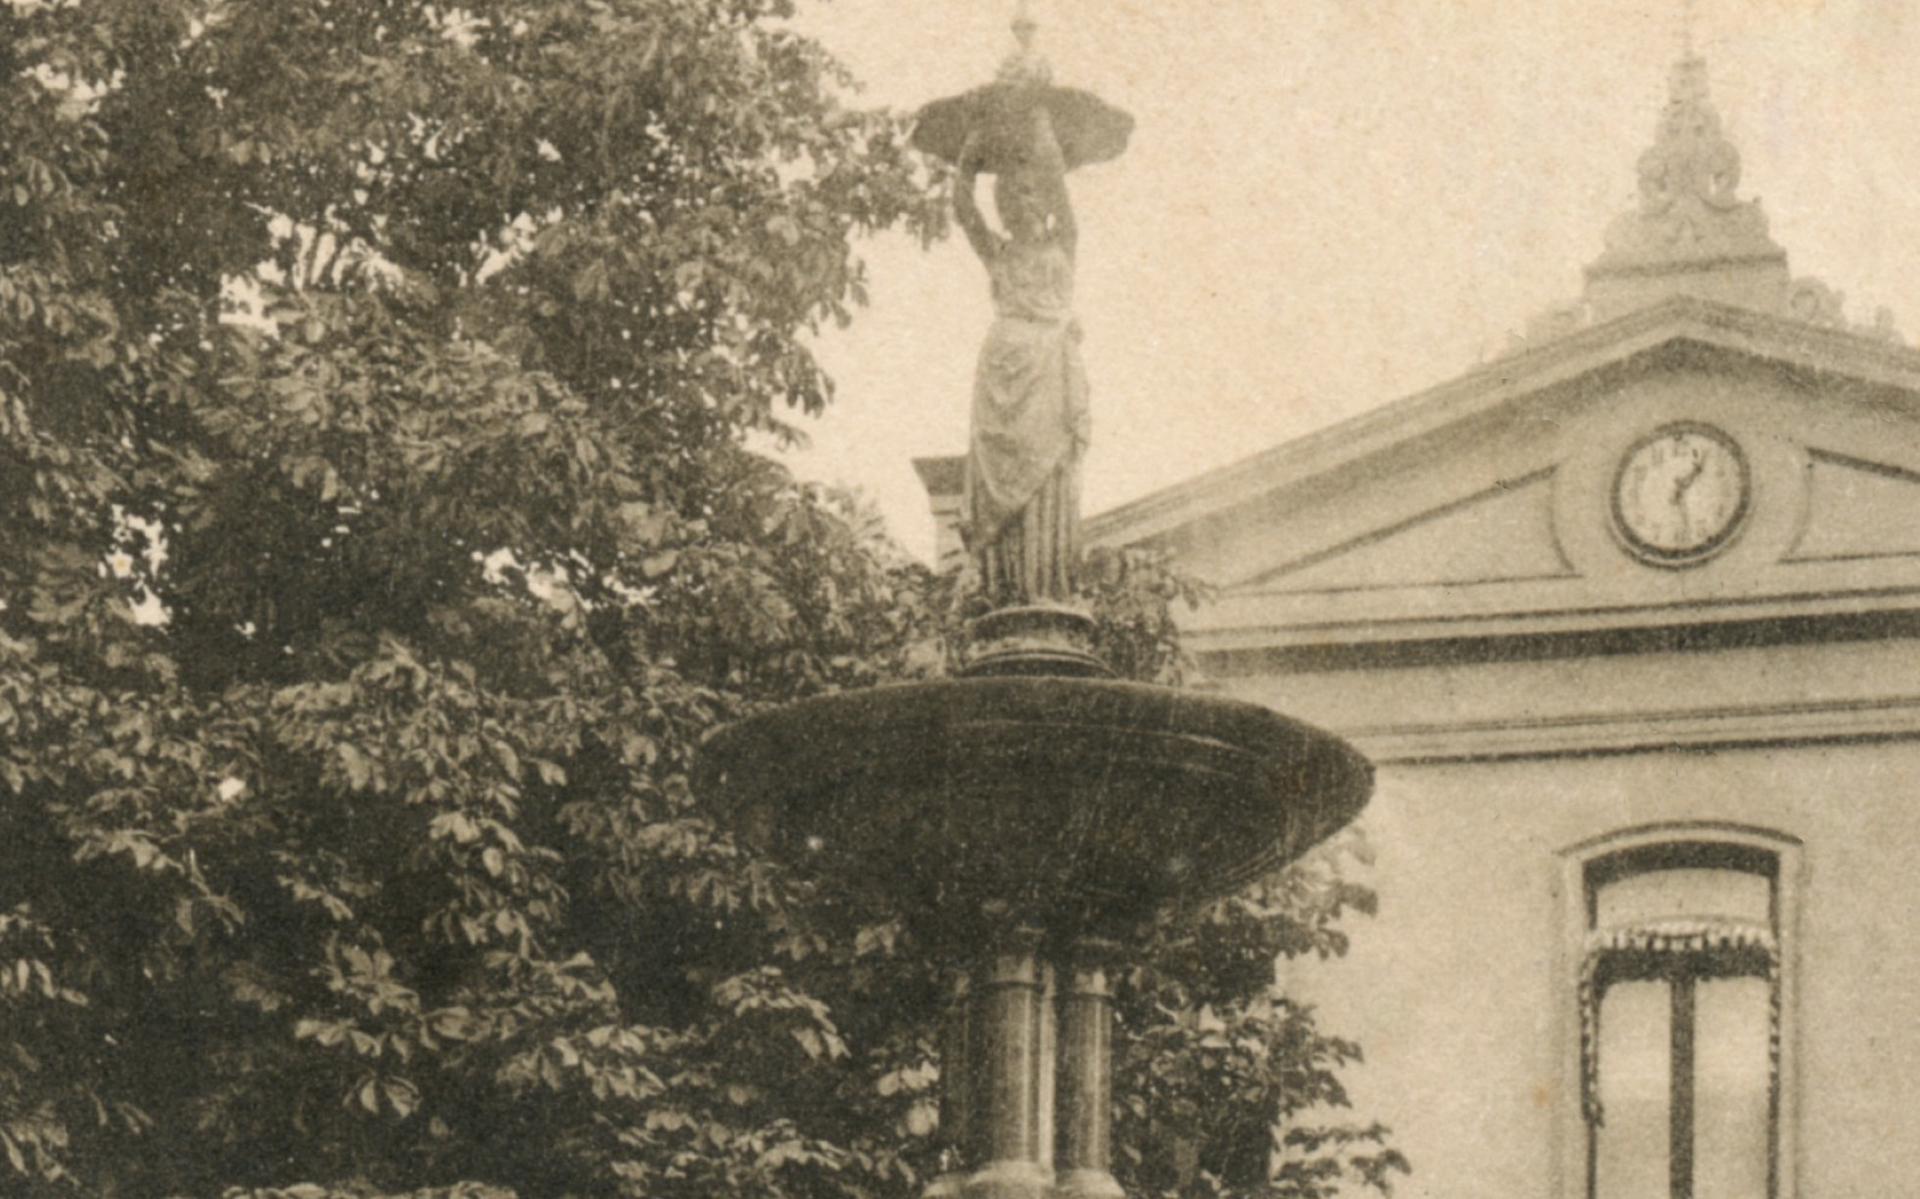 Het vroegere Borger-monument, met fontein en beeld.